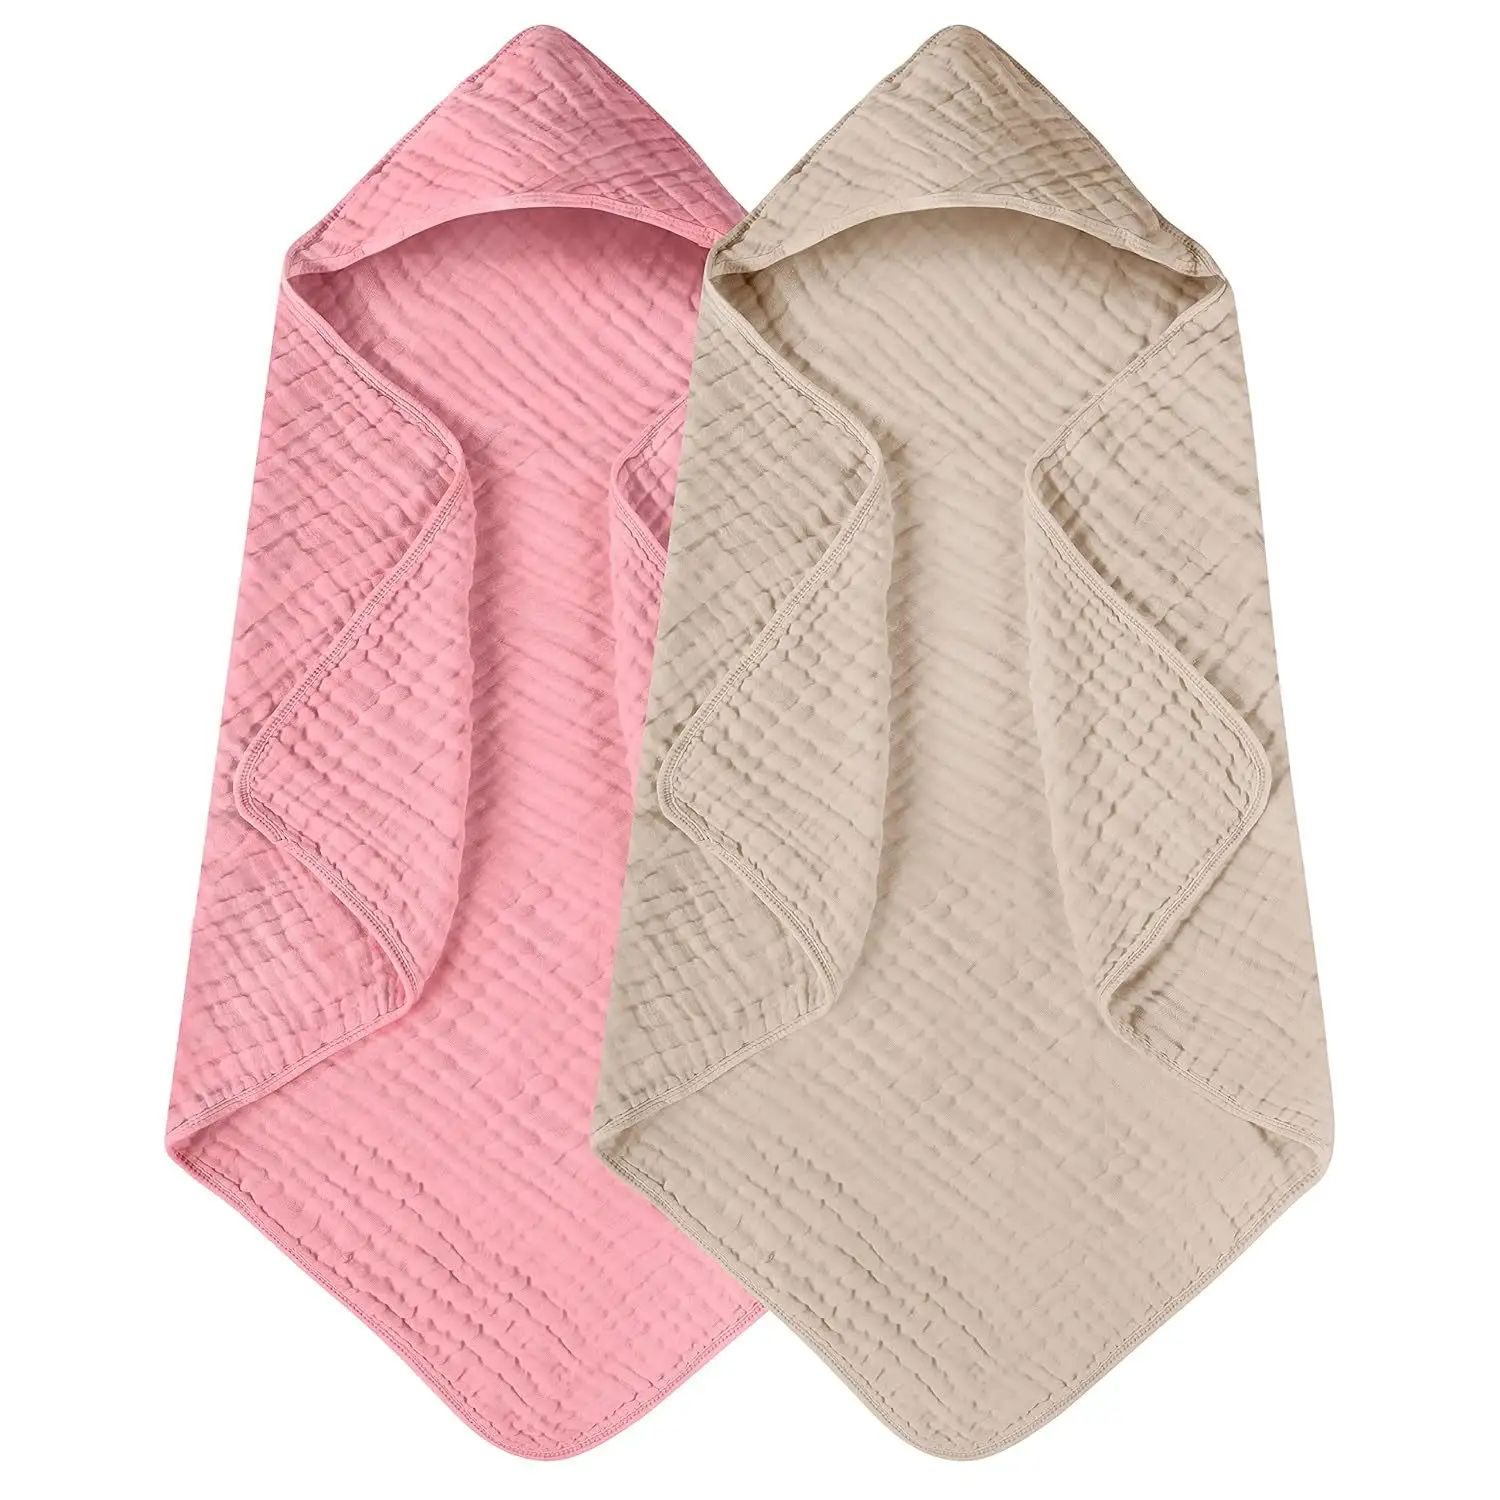 Personalizado de lujo de bambú suave 100% muselina Swaddle Manta de algodón con capucha baño toallas de bebé